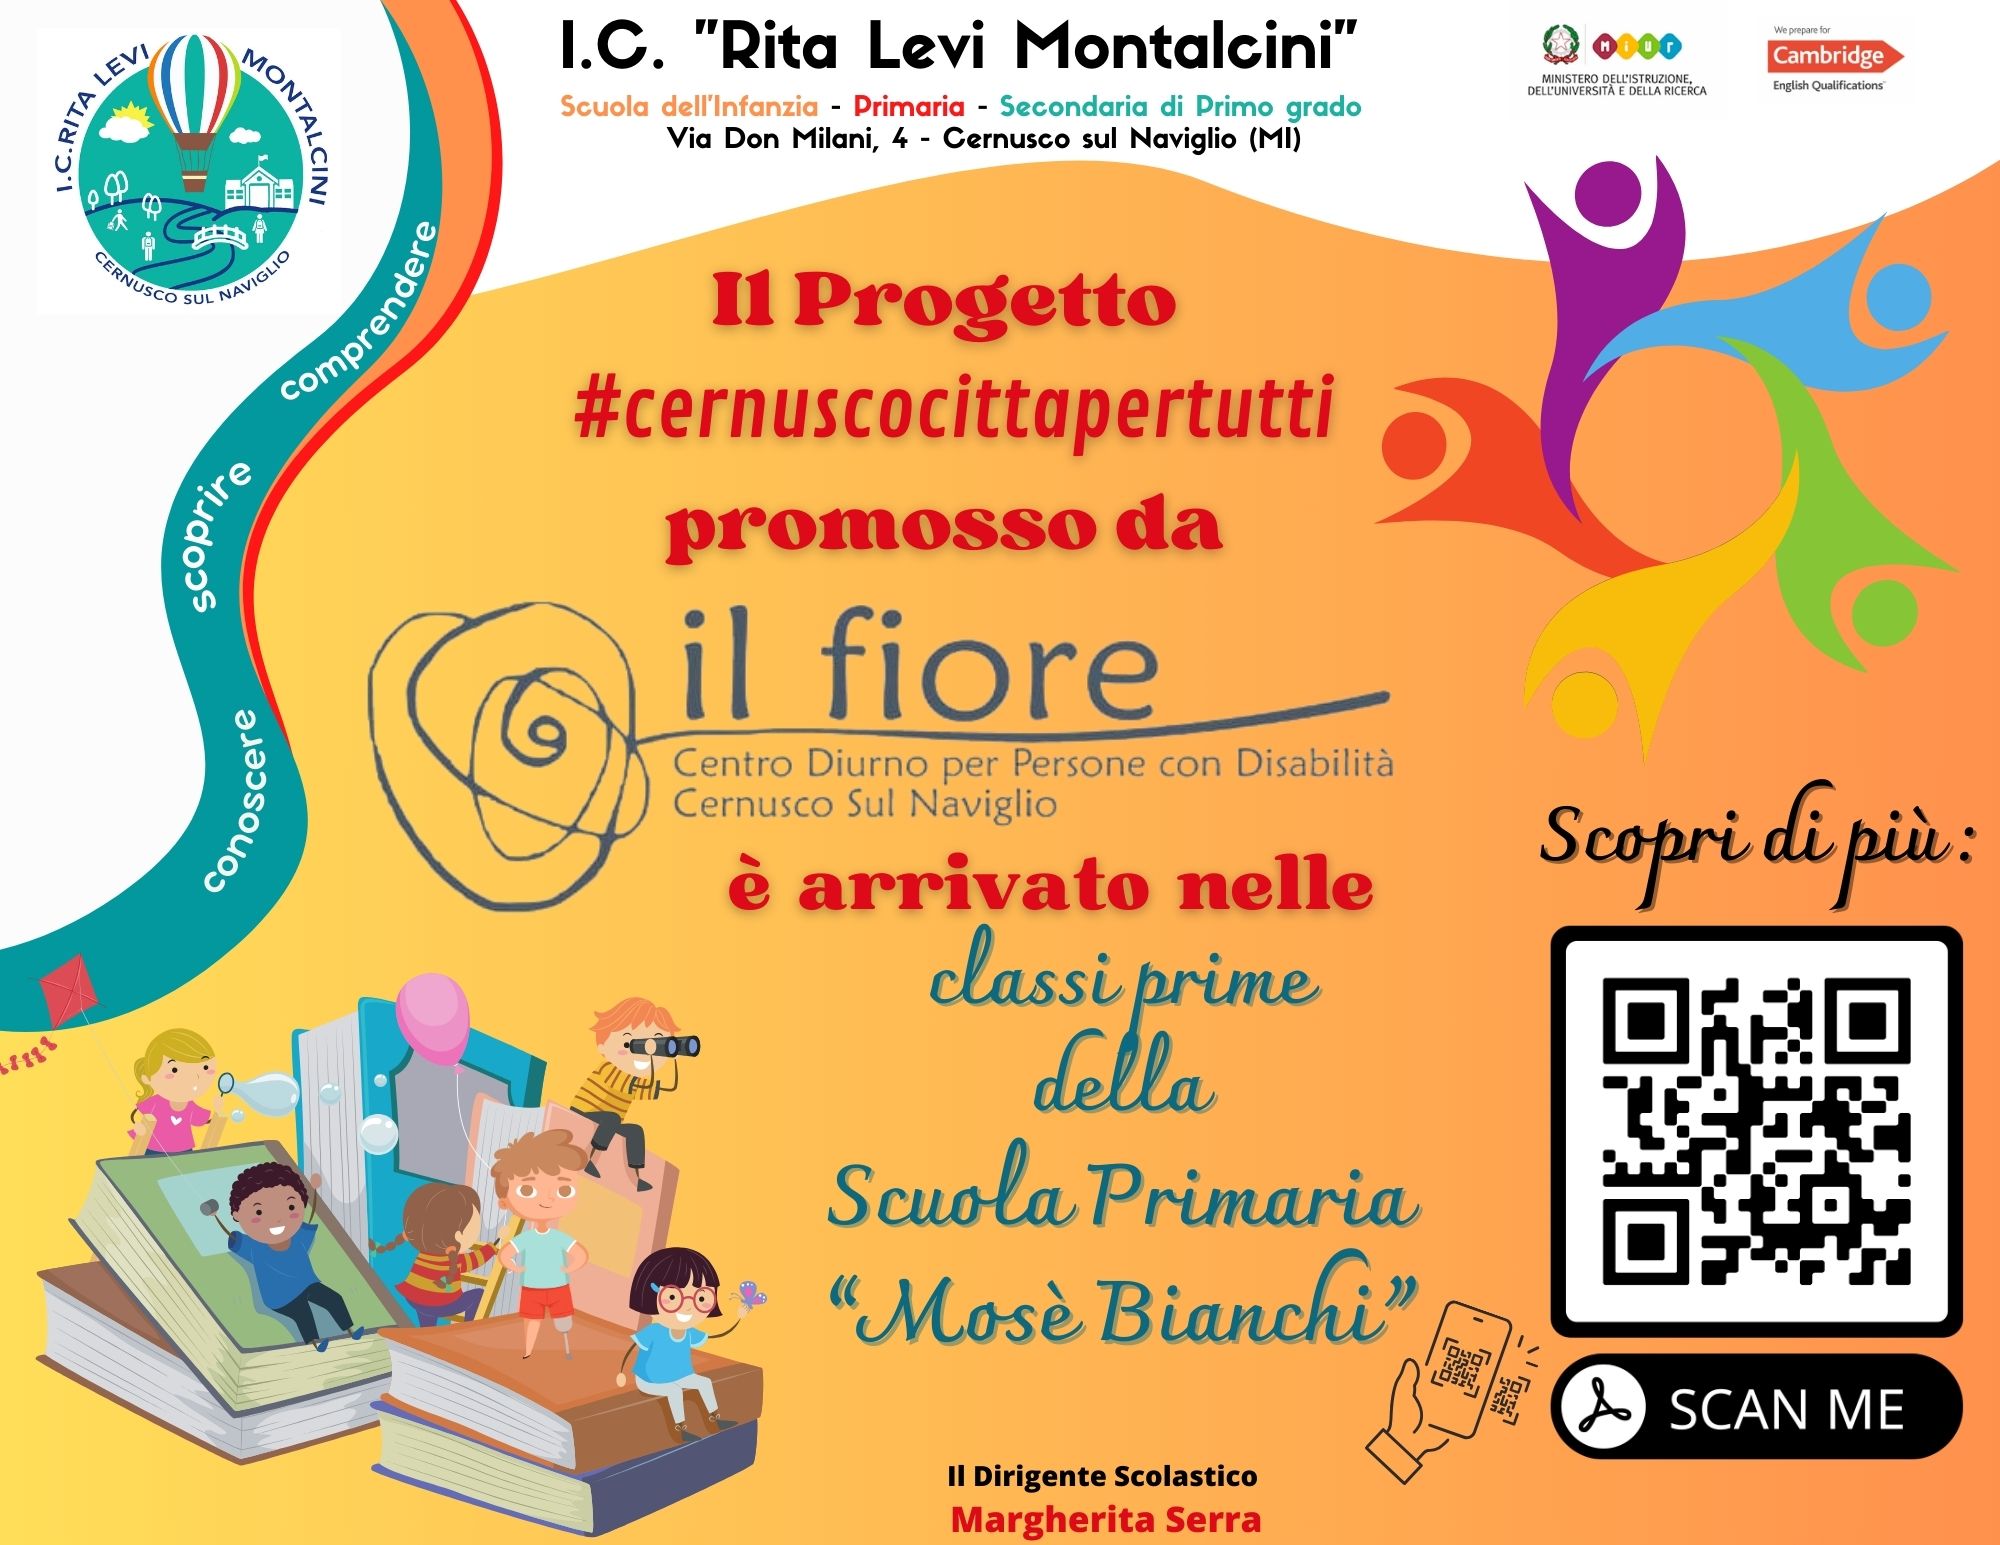 Progetto #cernuscocittapertutti dedicato alle classi prime della scuola primaria Mosè Bianchi.